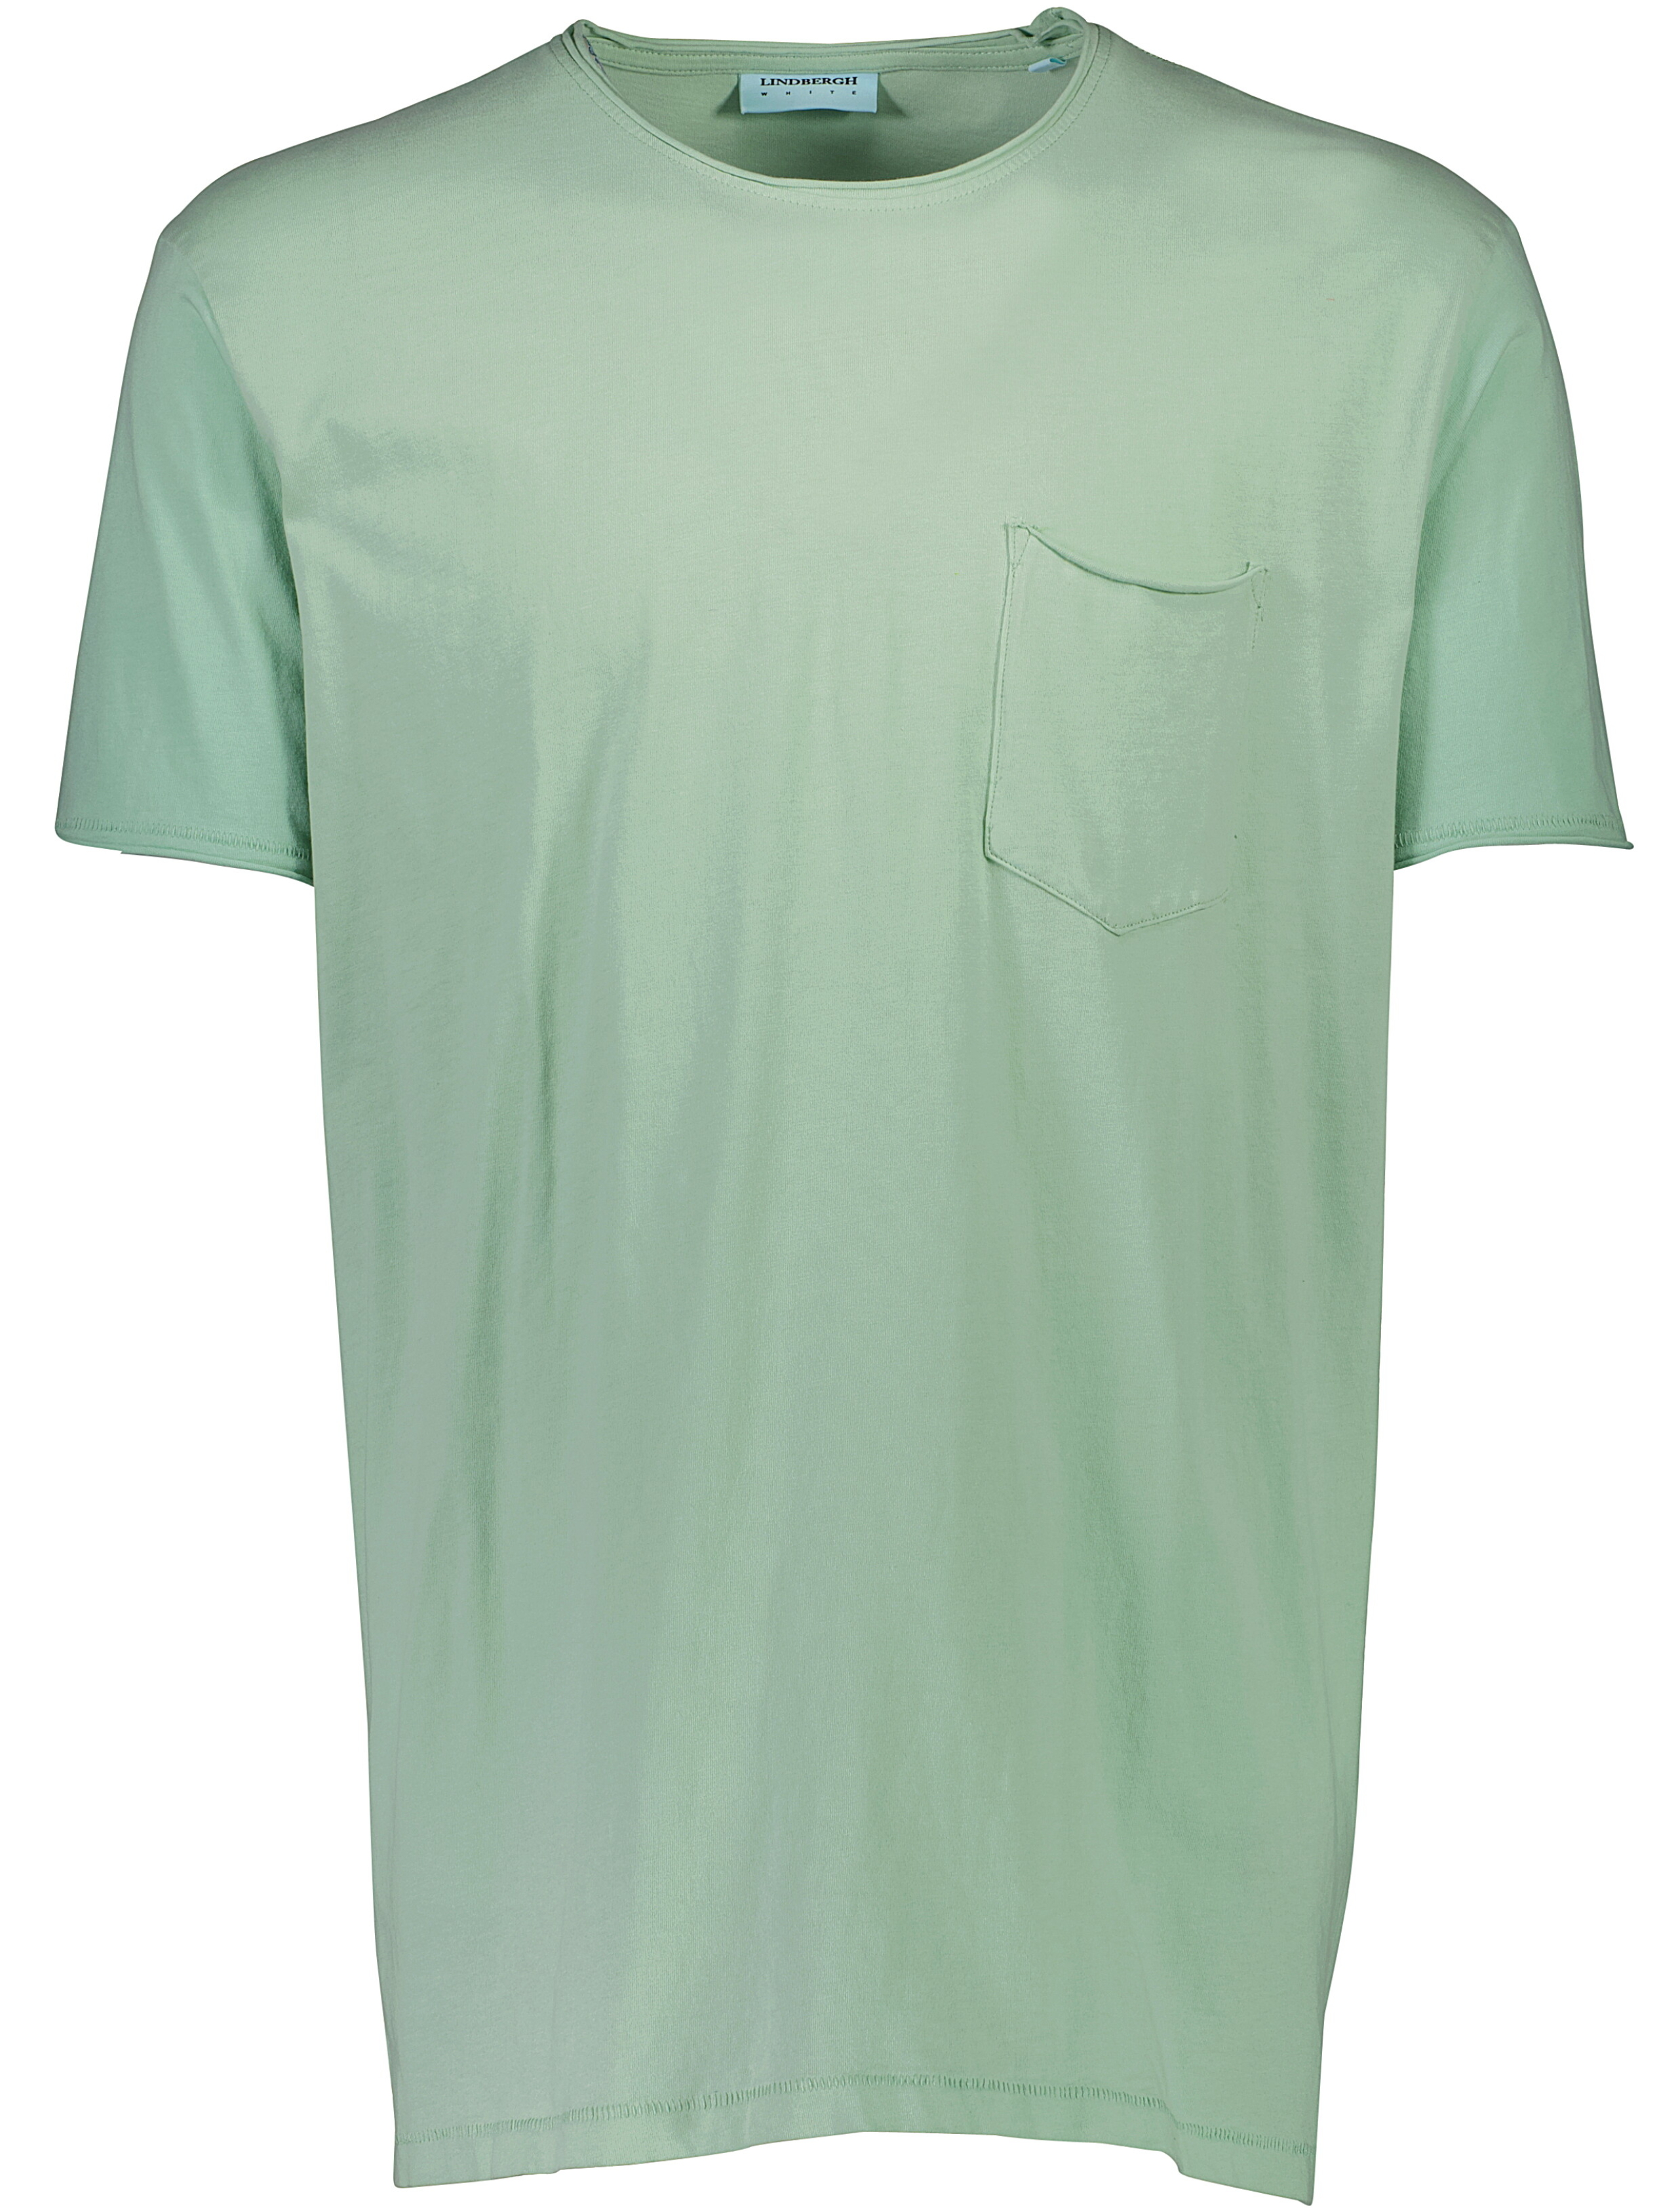 Lindbergh T-shirt grön / dusty mint